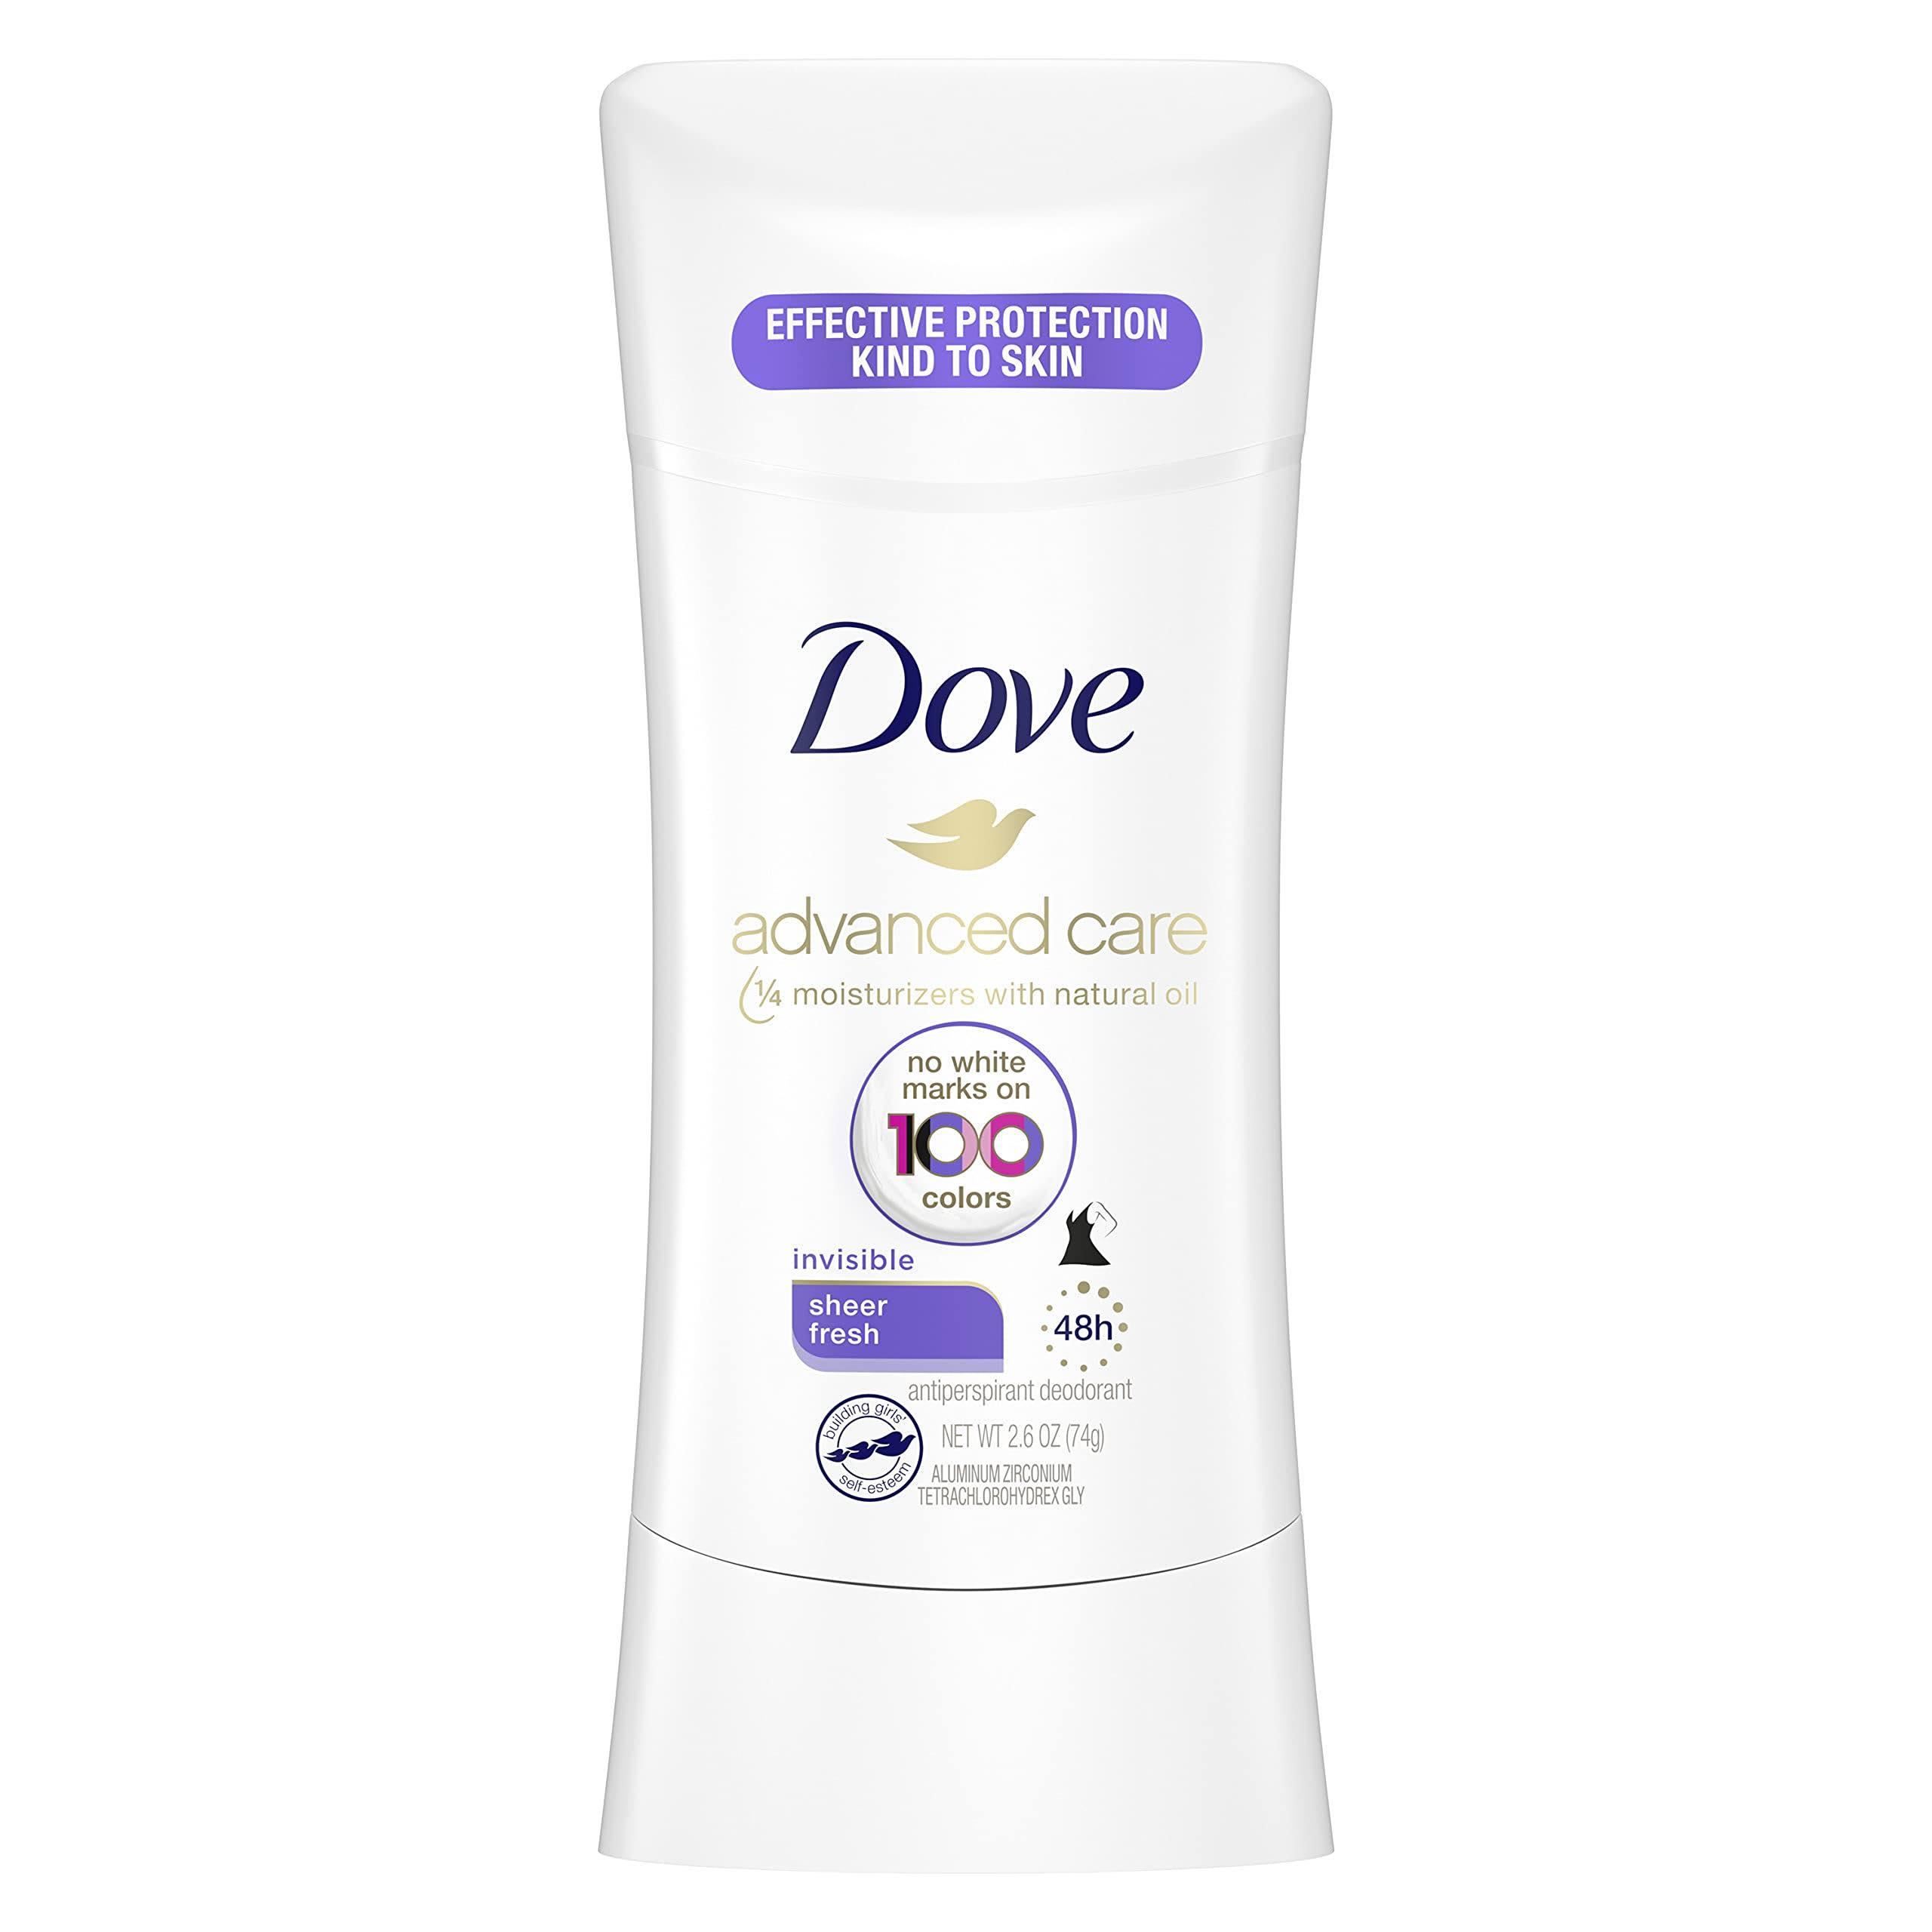 Dove Advanced Care Invisible 48h Anti-Perspirant - Sheer Fresh, 2.6oz